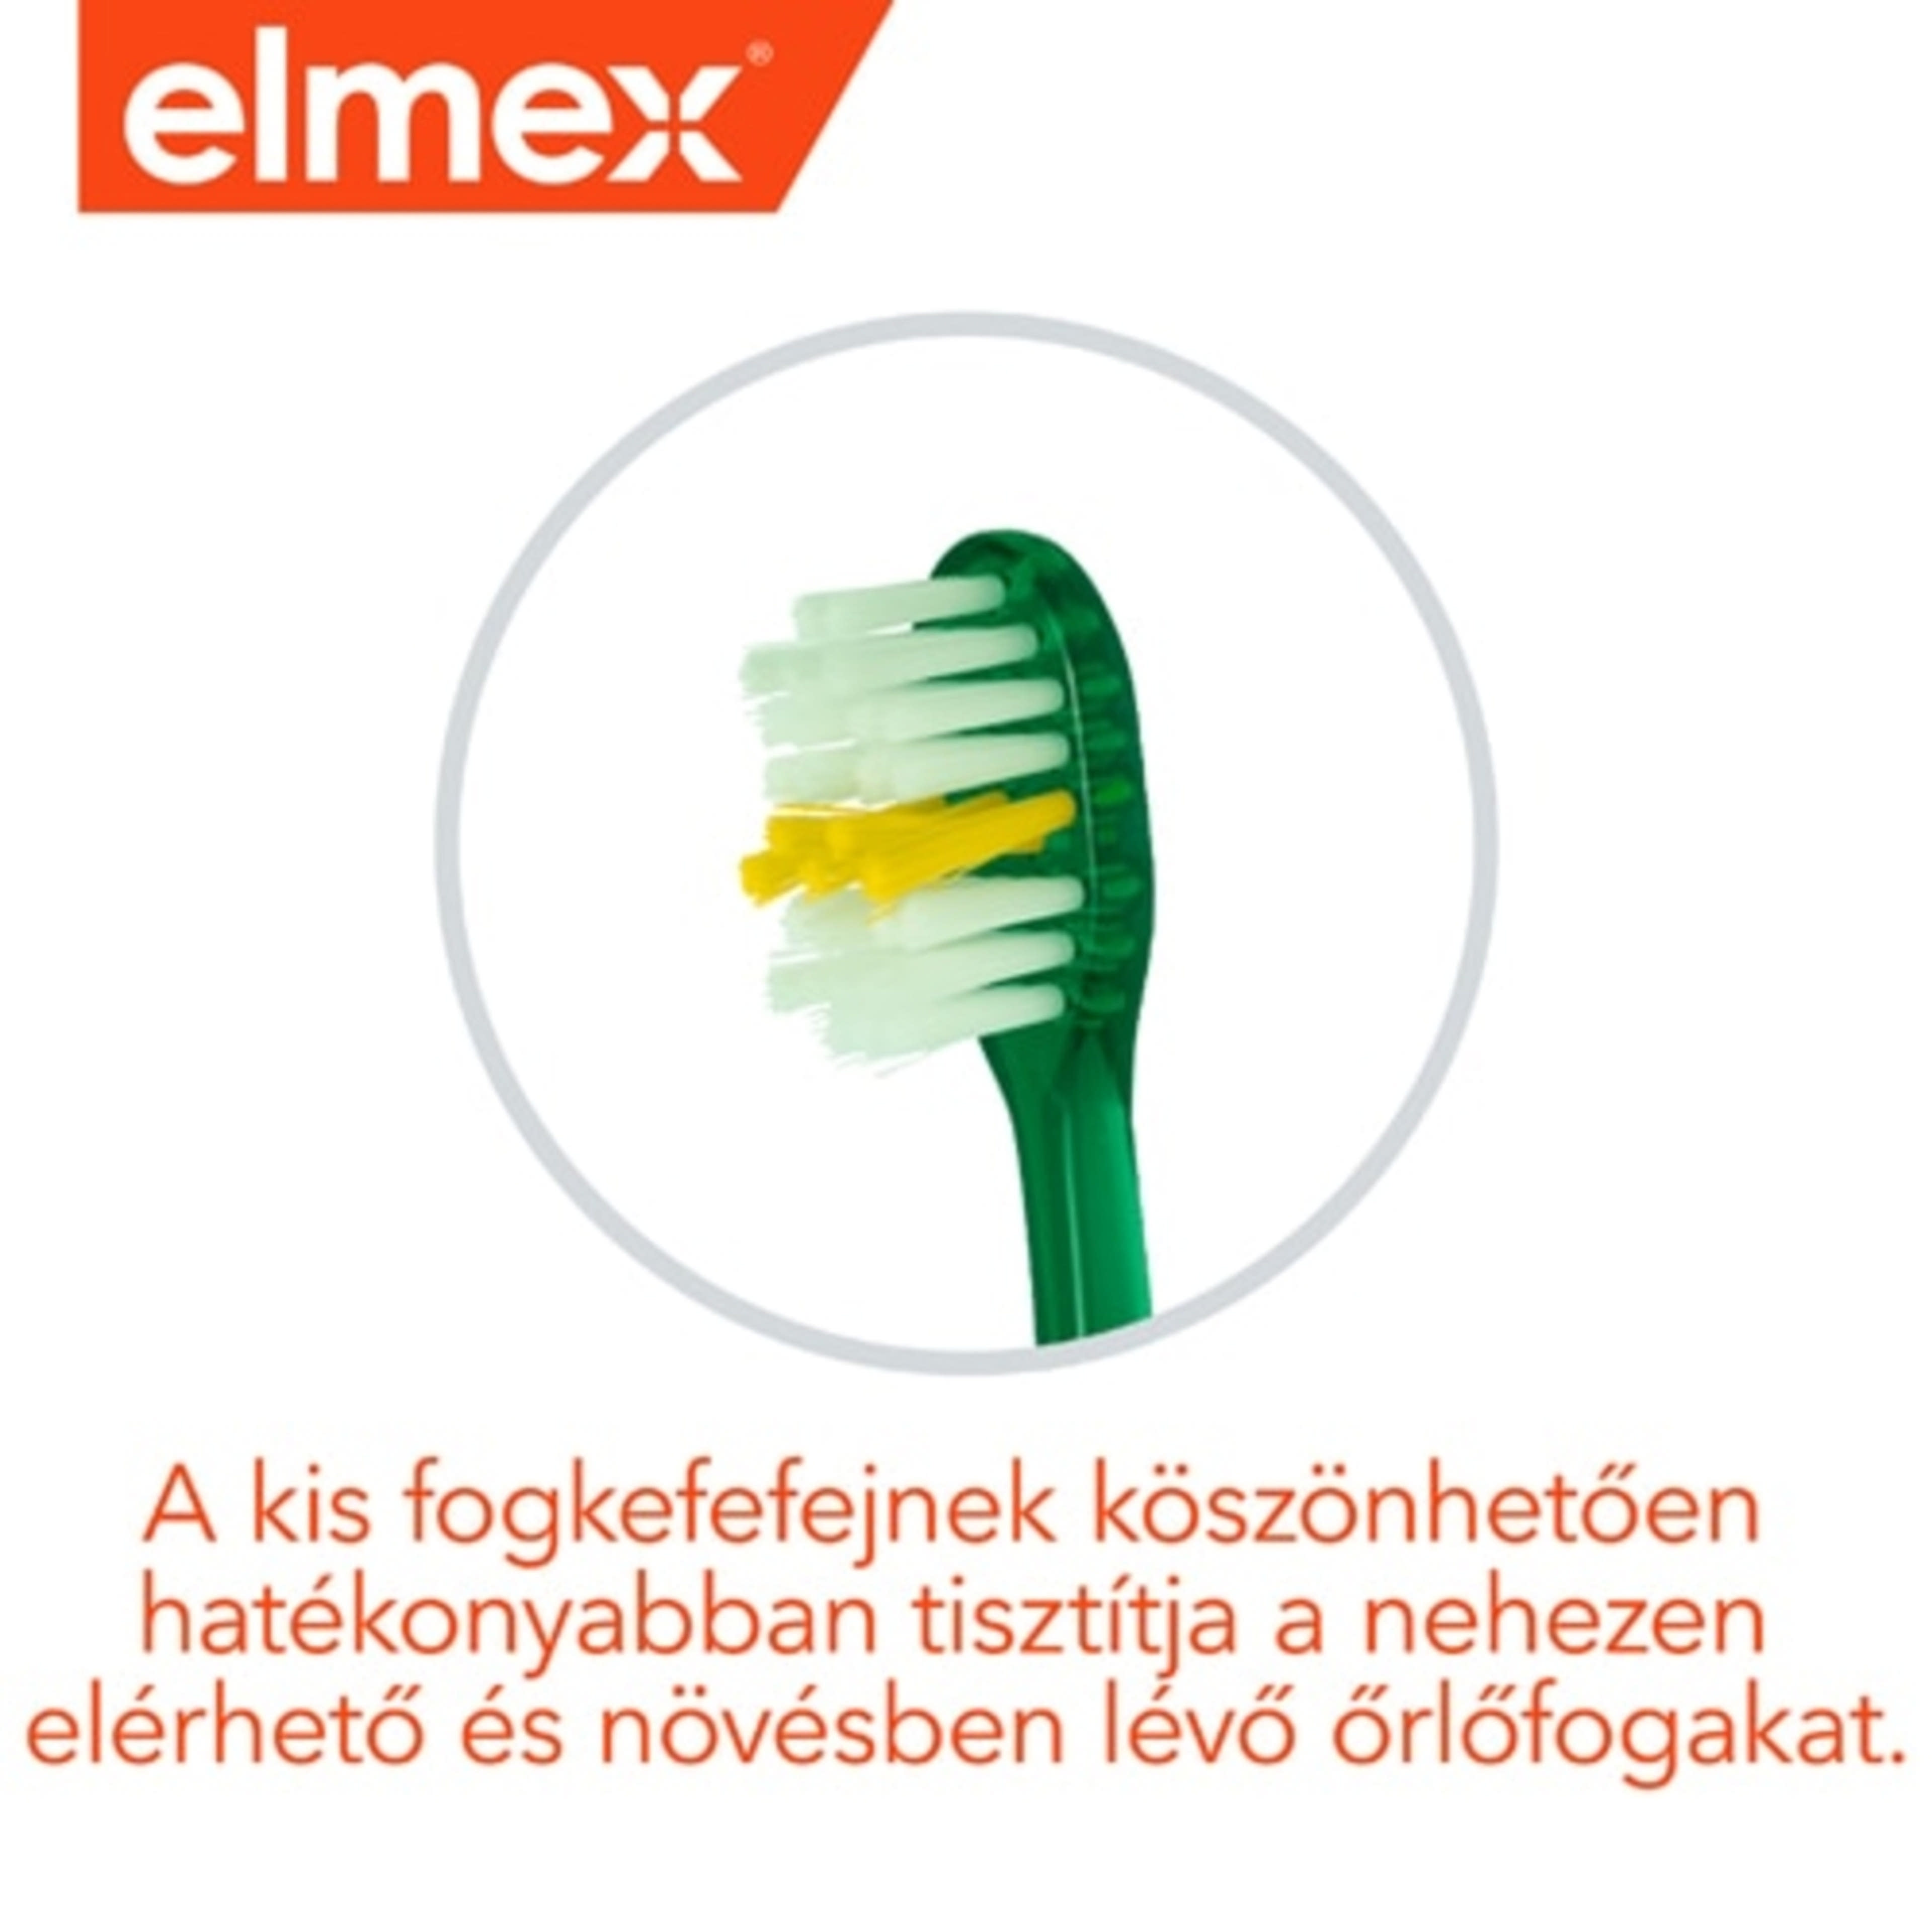 Elmex Junior 6-12 éves kor között ajánlott fogkefe - 1 db-5